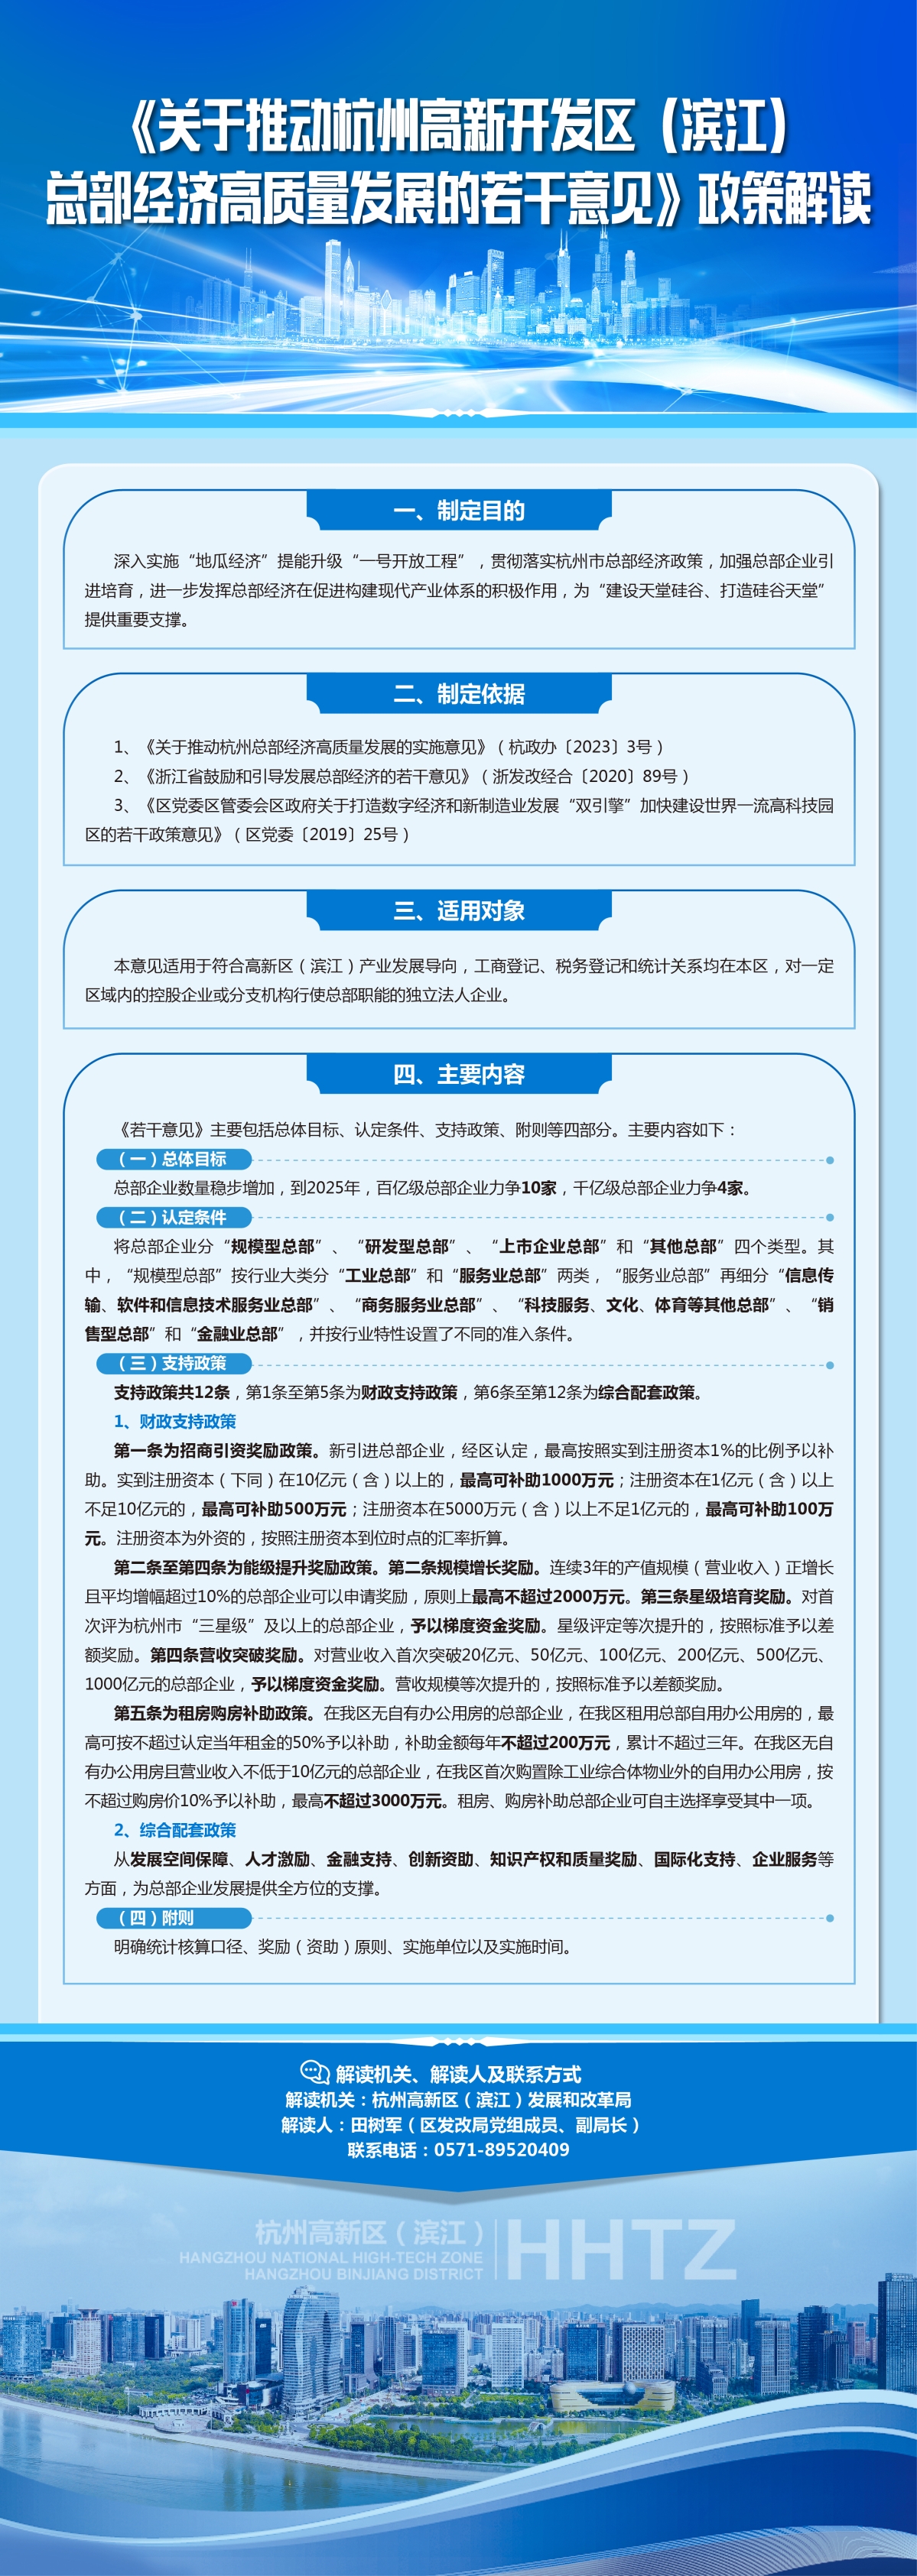 《关于推动杭州高新开发区（滨江）总部经济高质量发展的若干意见》政策解读.jpg